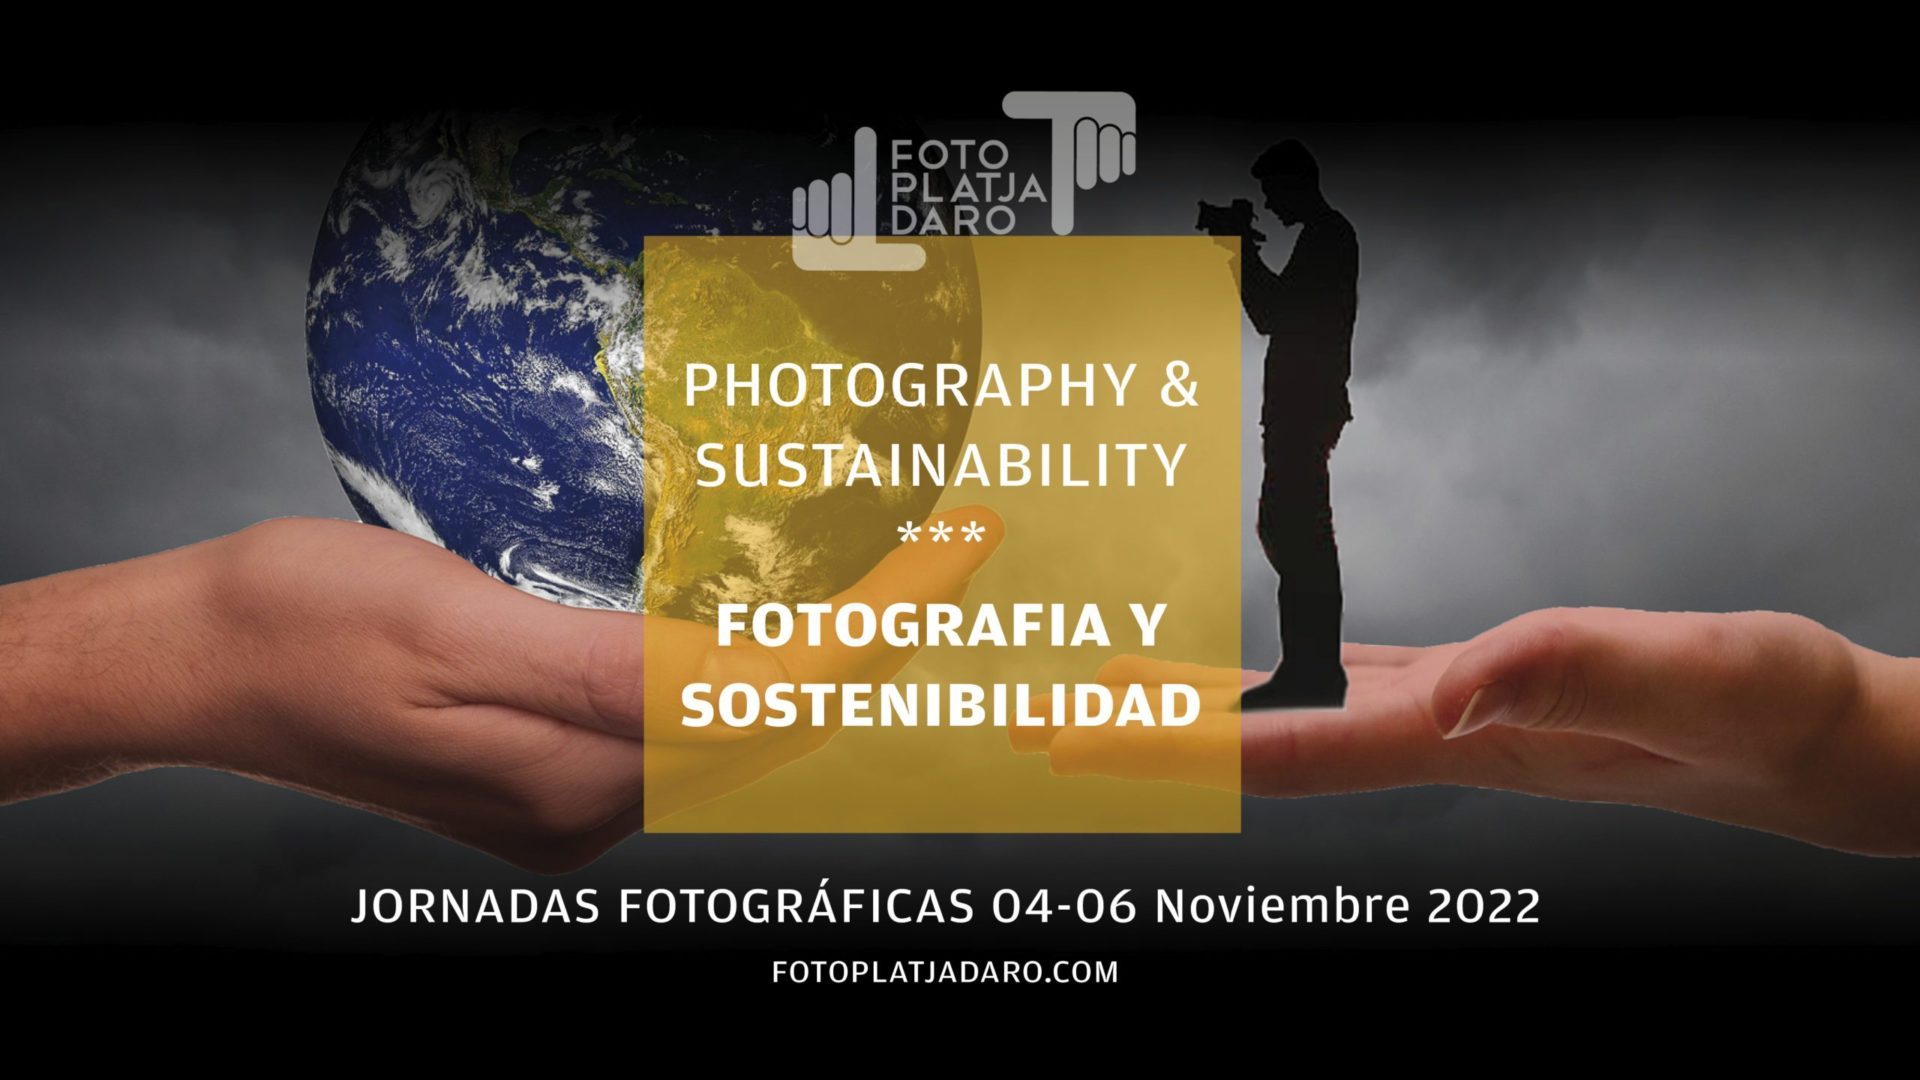 Jornadas Fotográficas 2022 | Fotografia y sostenibilidad